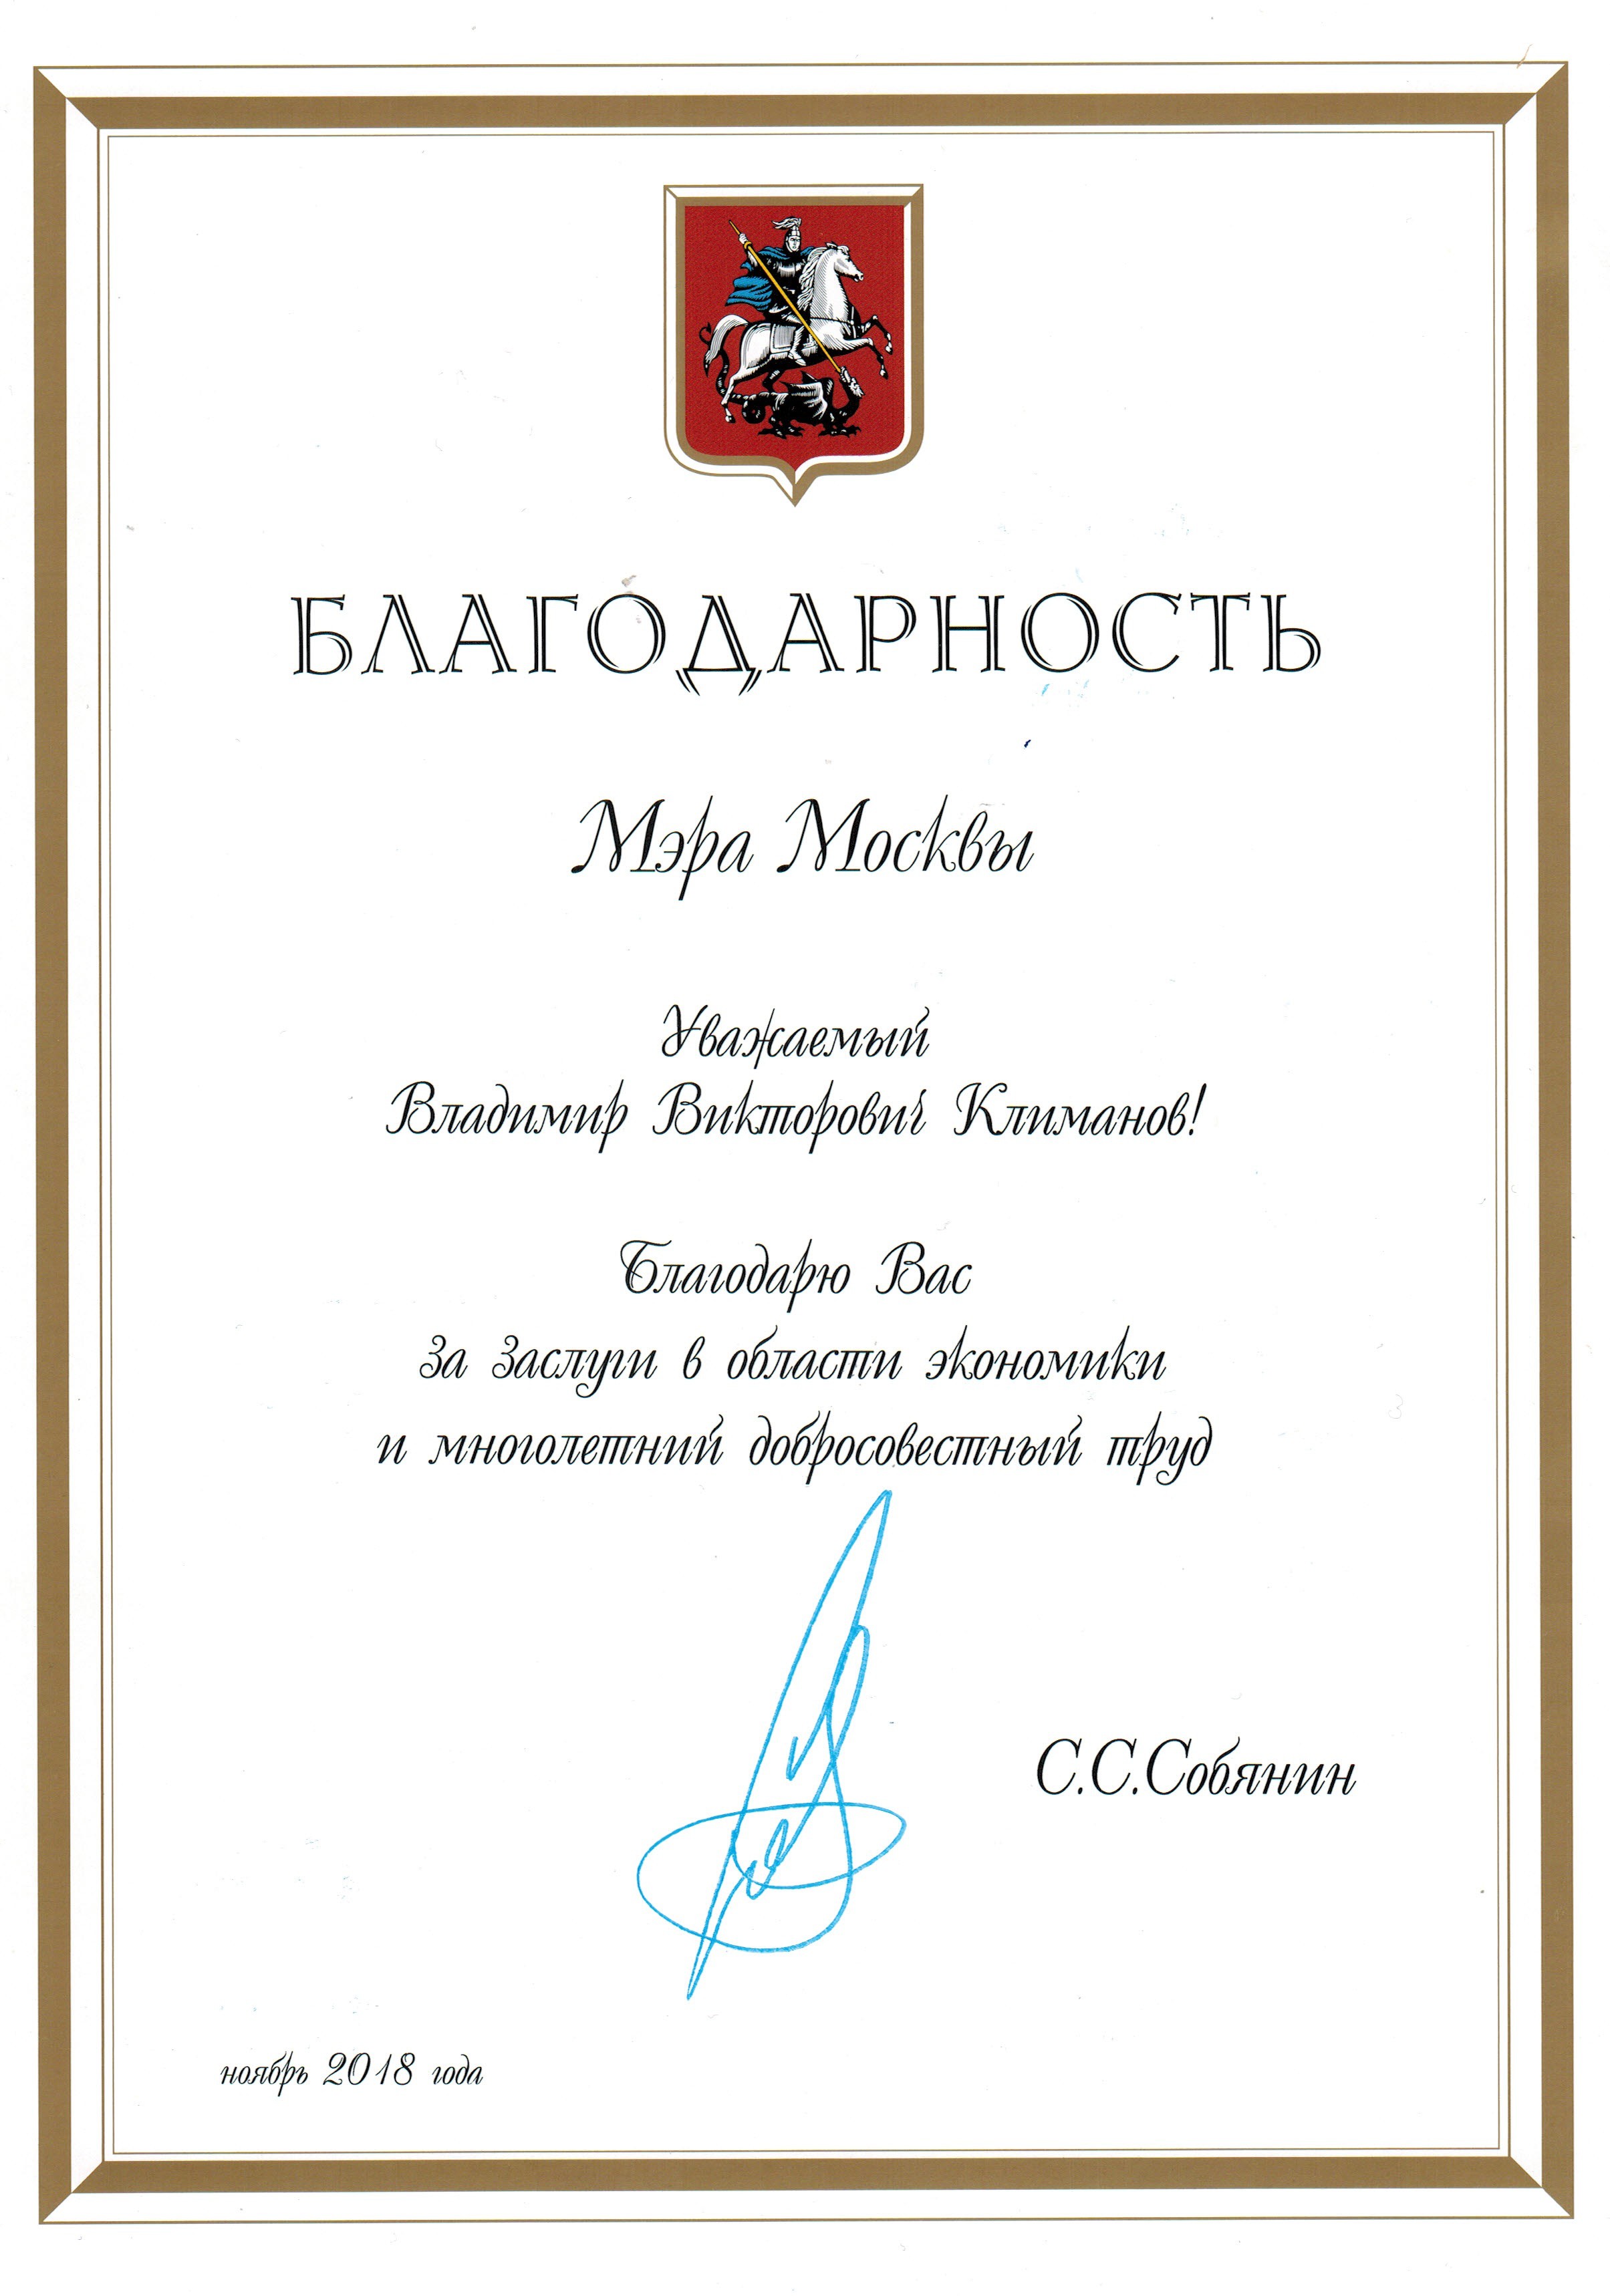 В.В. Климанов получил благодарственную грамоту от мэра Москвы С.С. Собянина